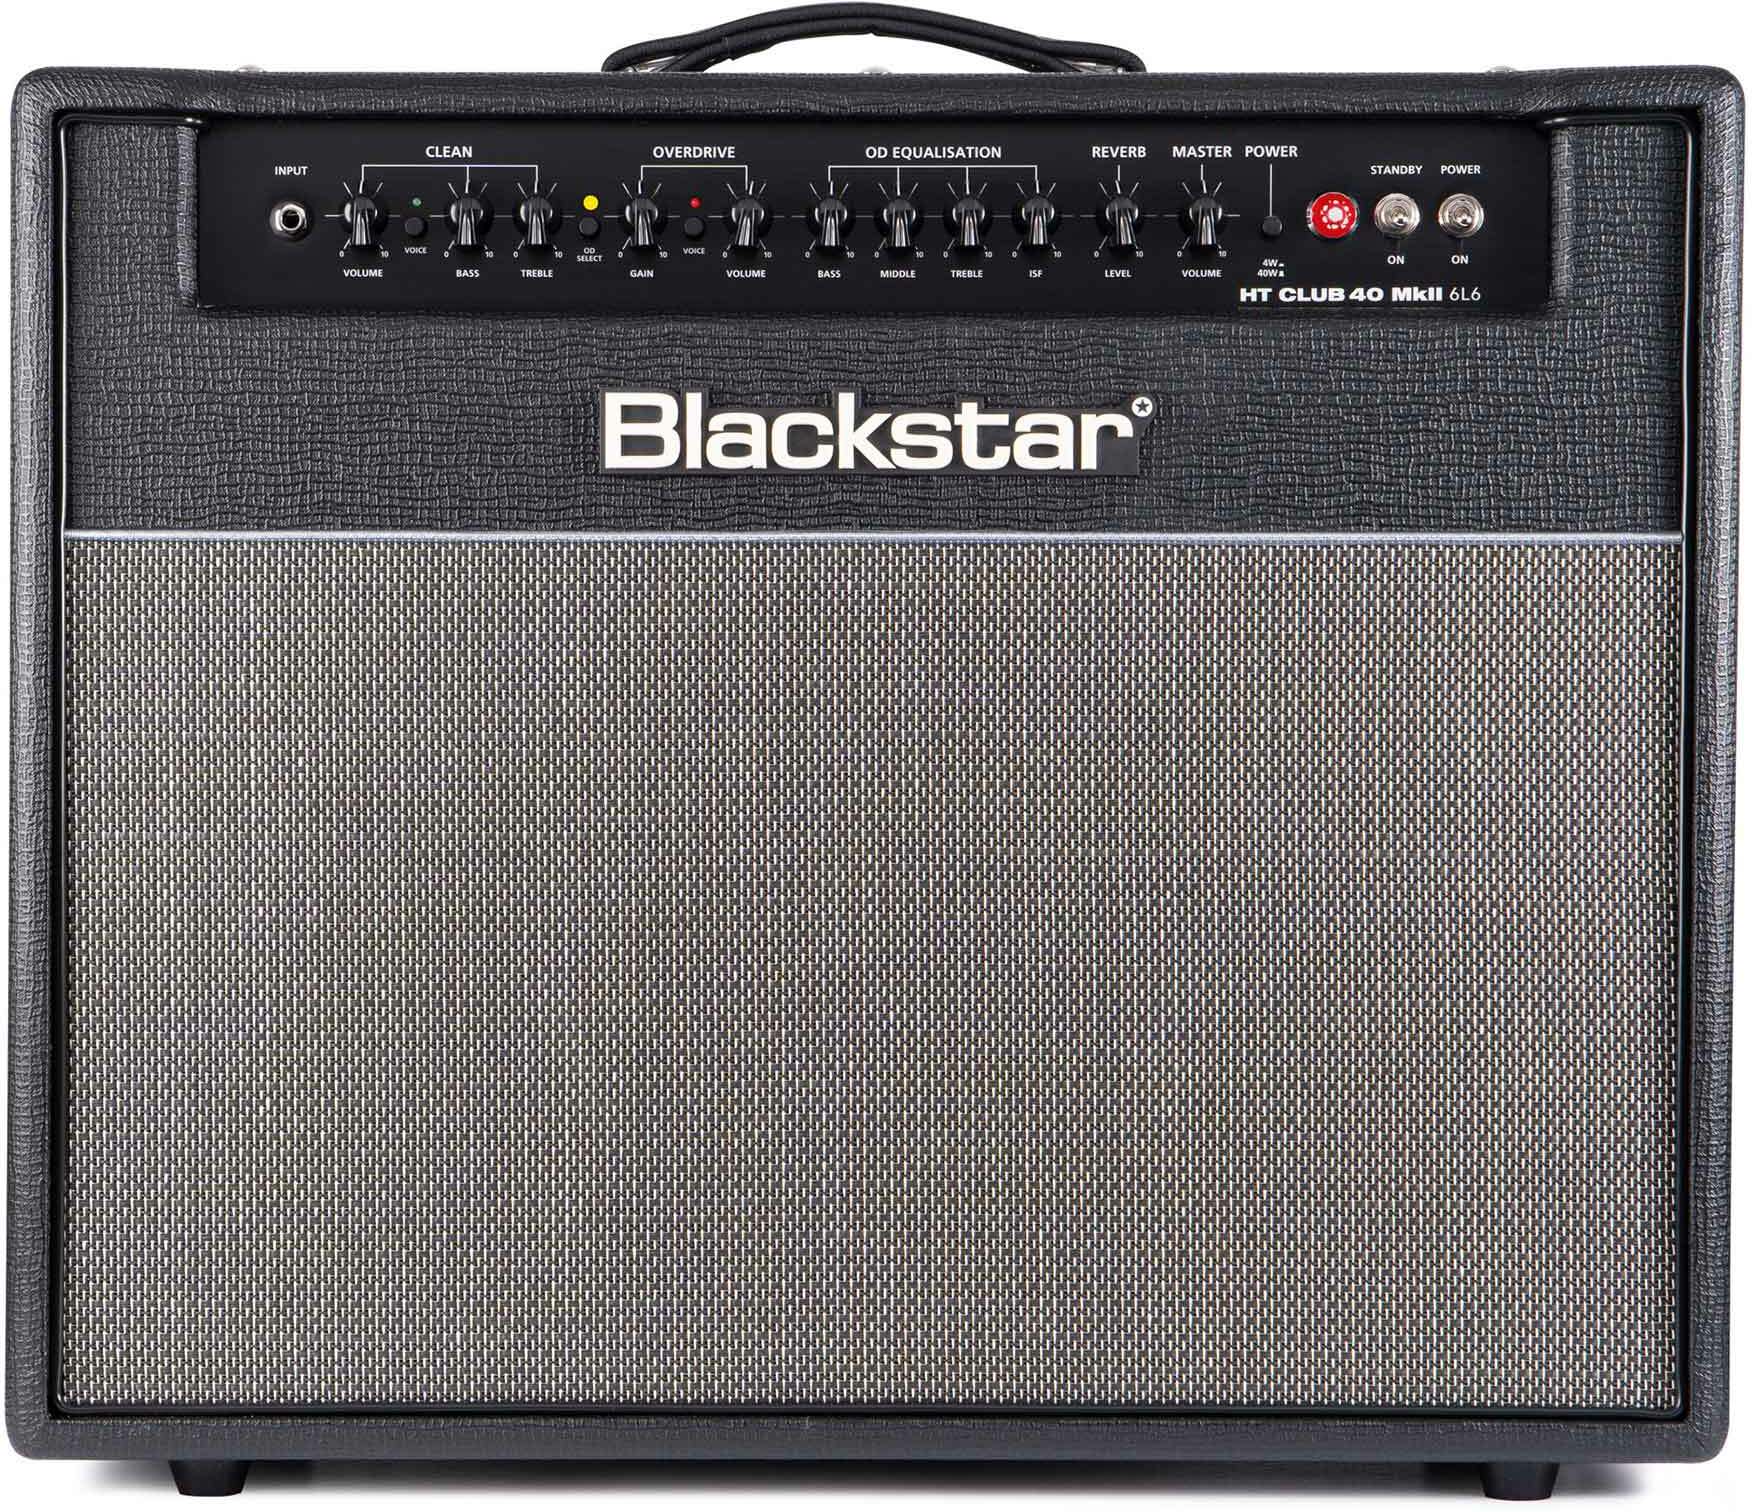 Blackstar Ht Club 40 Mkii 6l6 40w 1x12 Black - Combo amplificador para guitarra eléctrica - Main picture